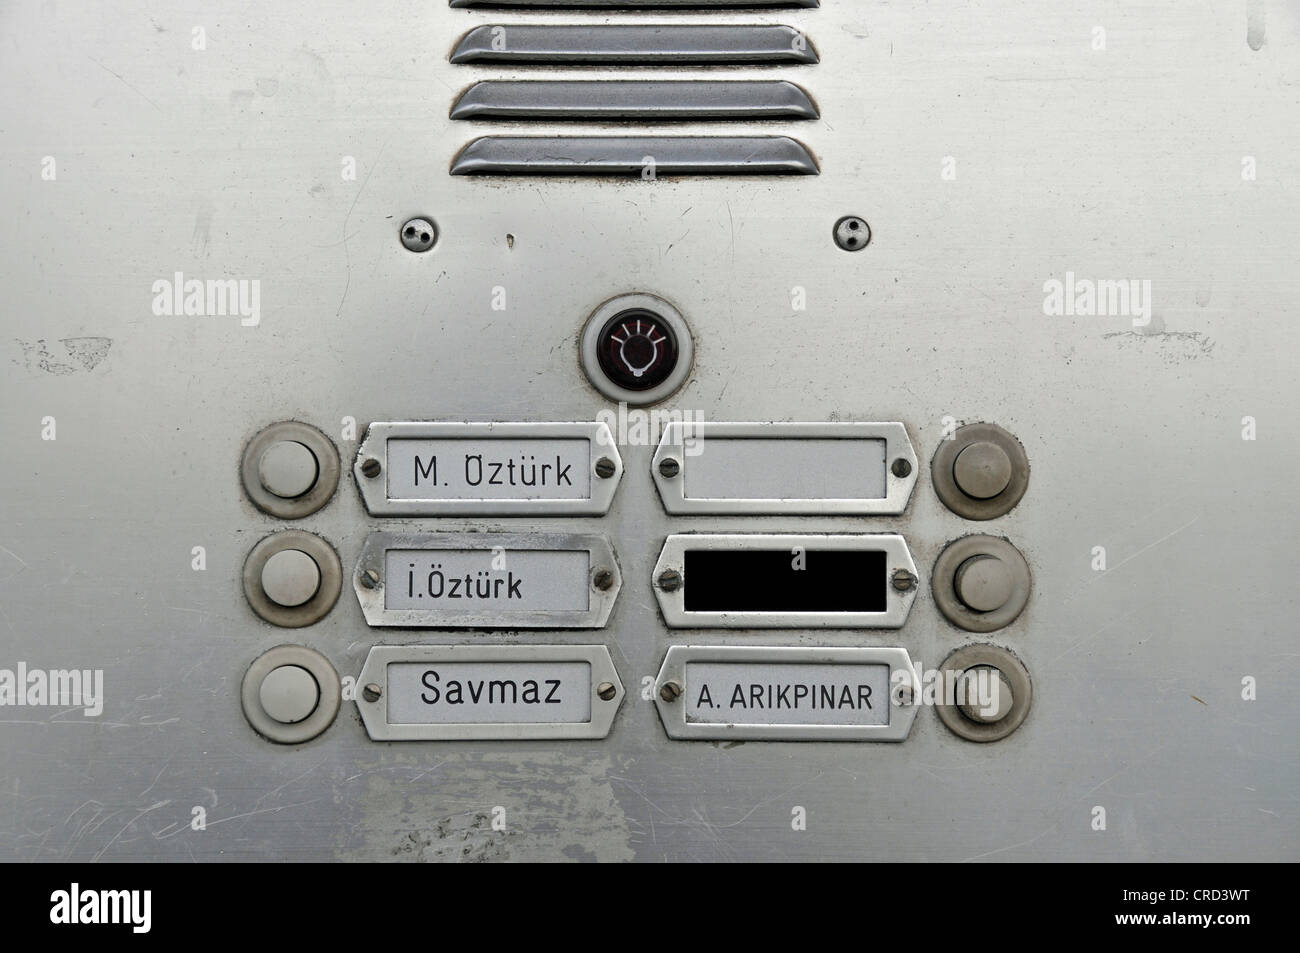 doorbell panel with turkish names, Germany, Koeln-Muelheim Stock Photo